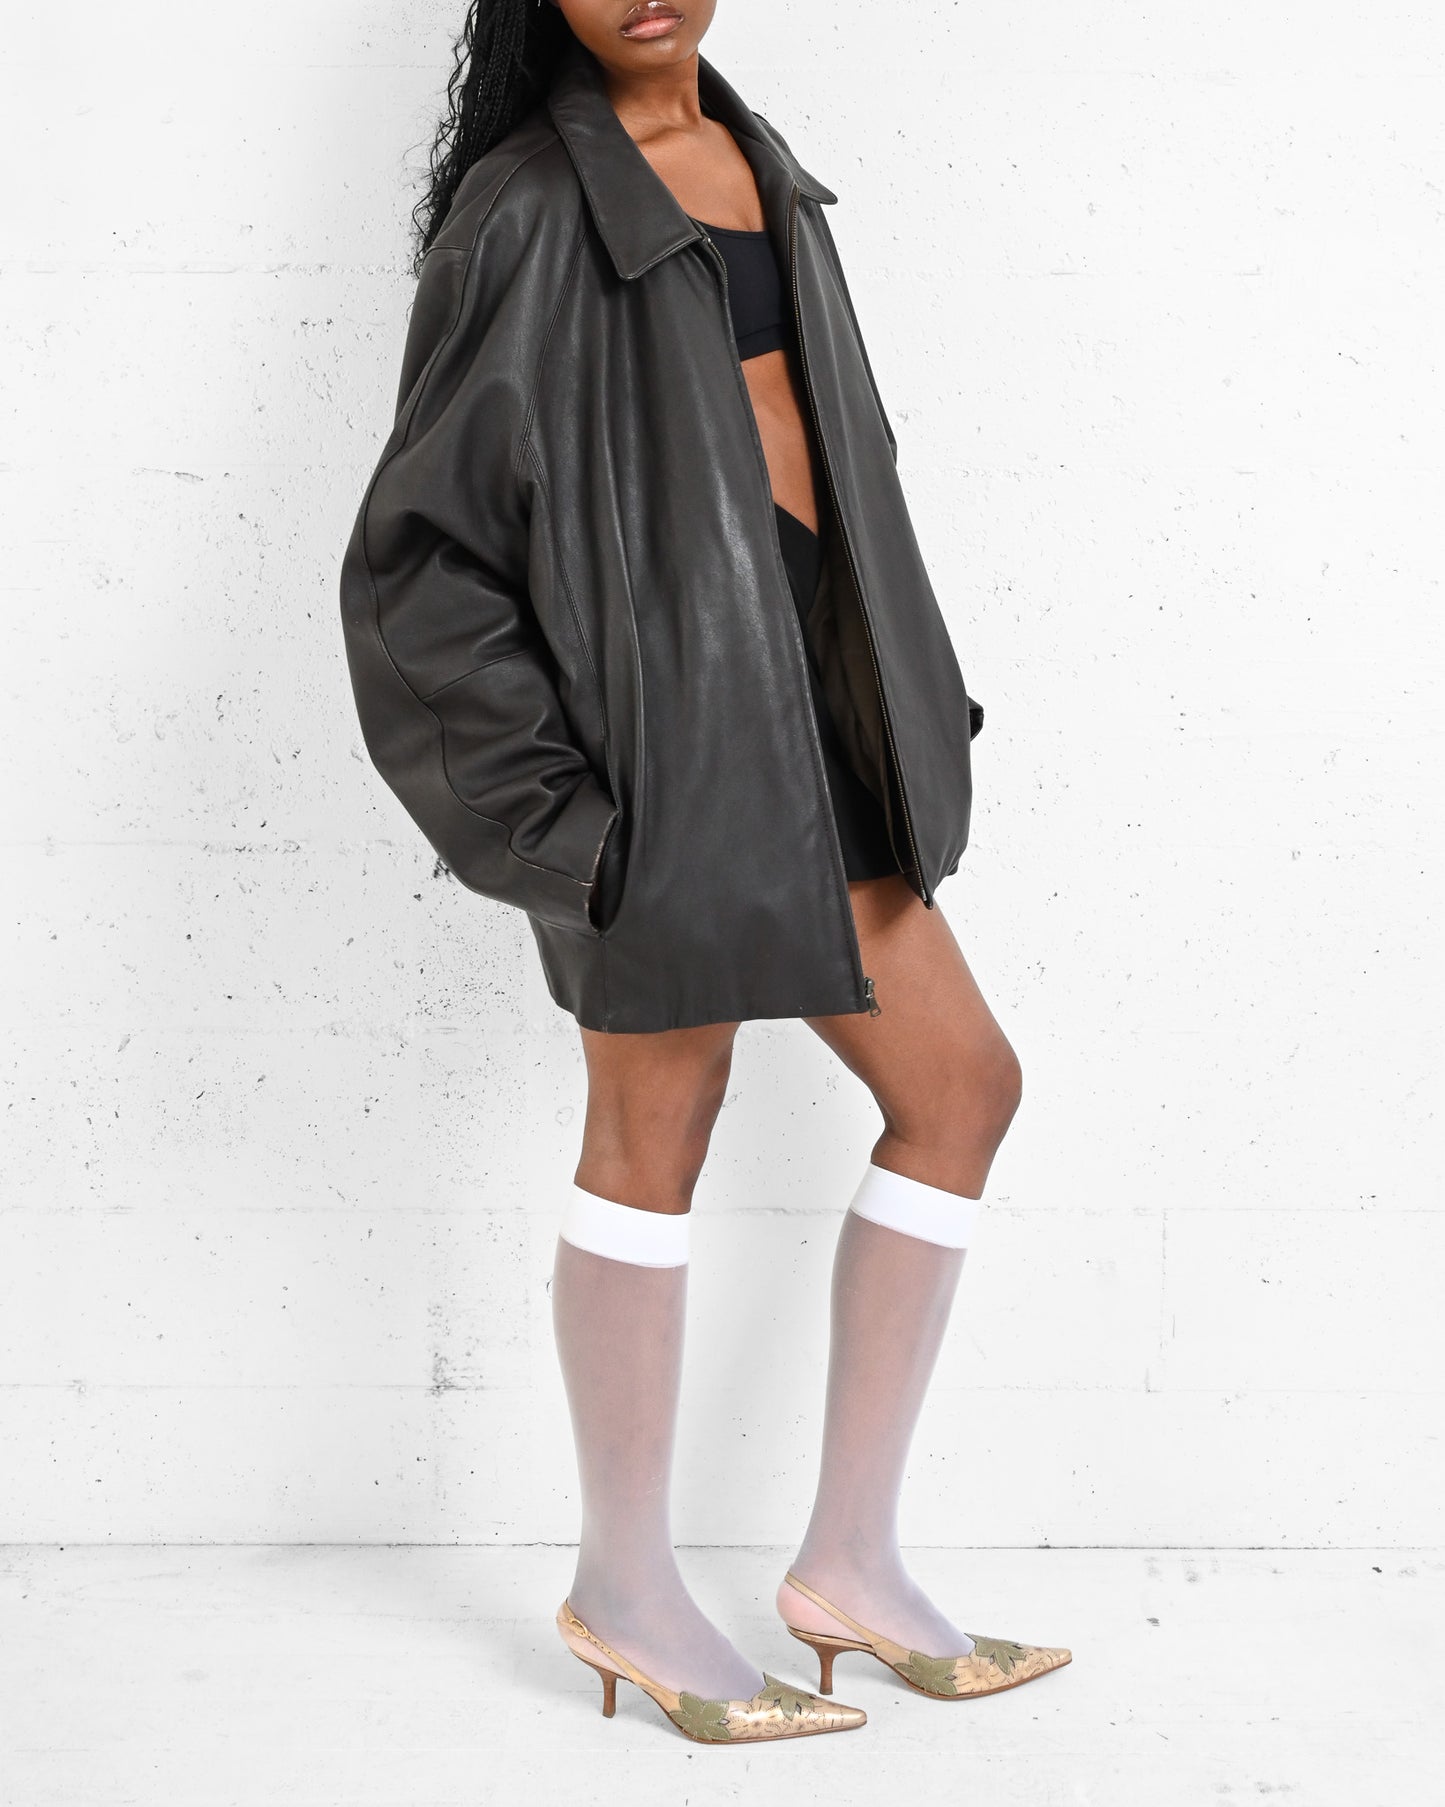 Dark Brown Leather Jacket (XL)